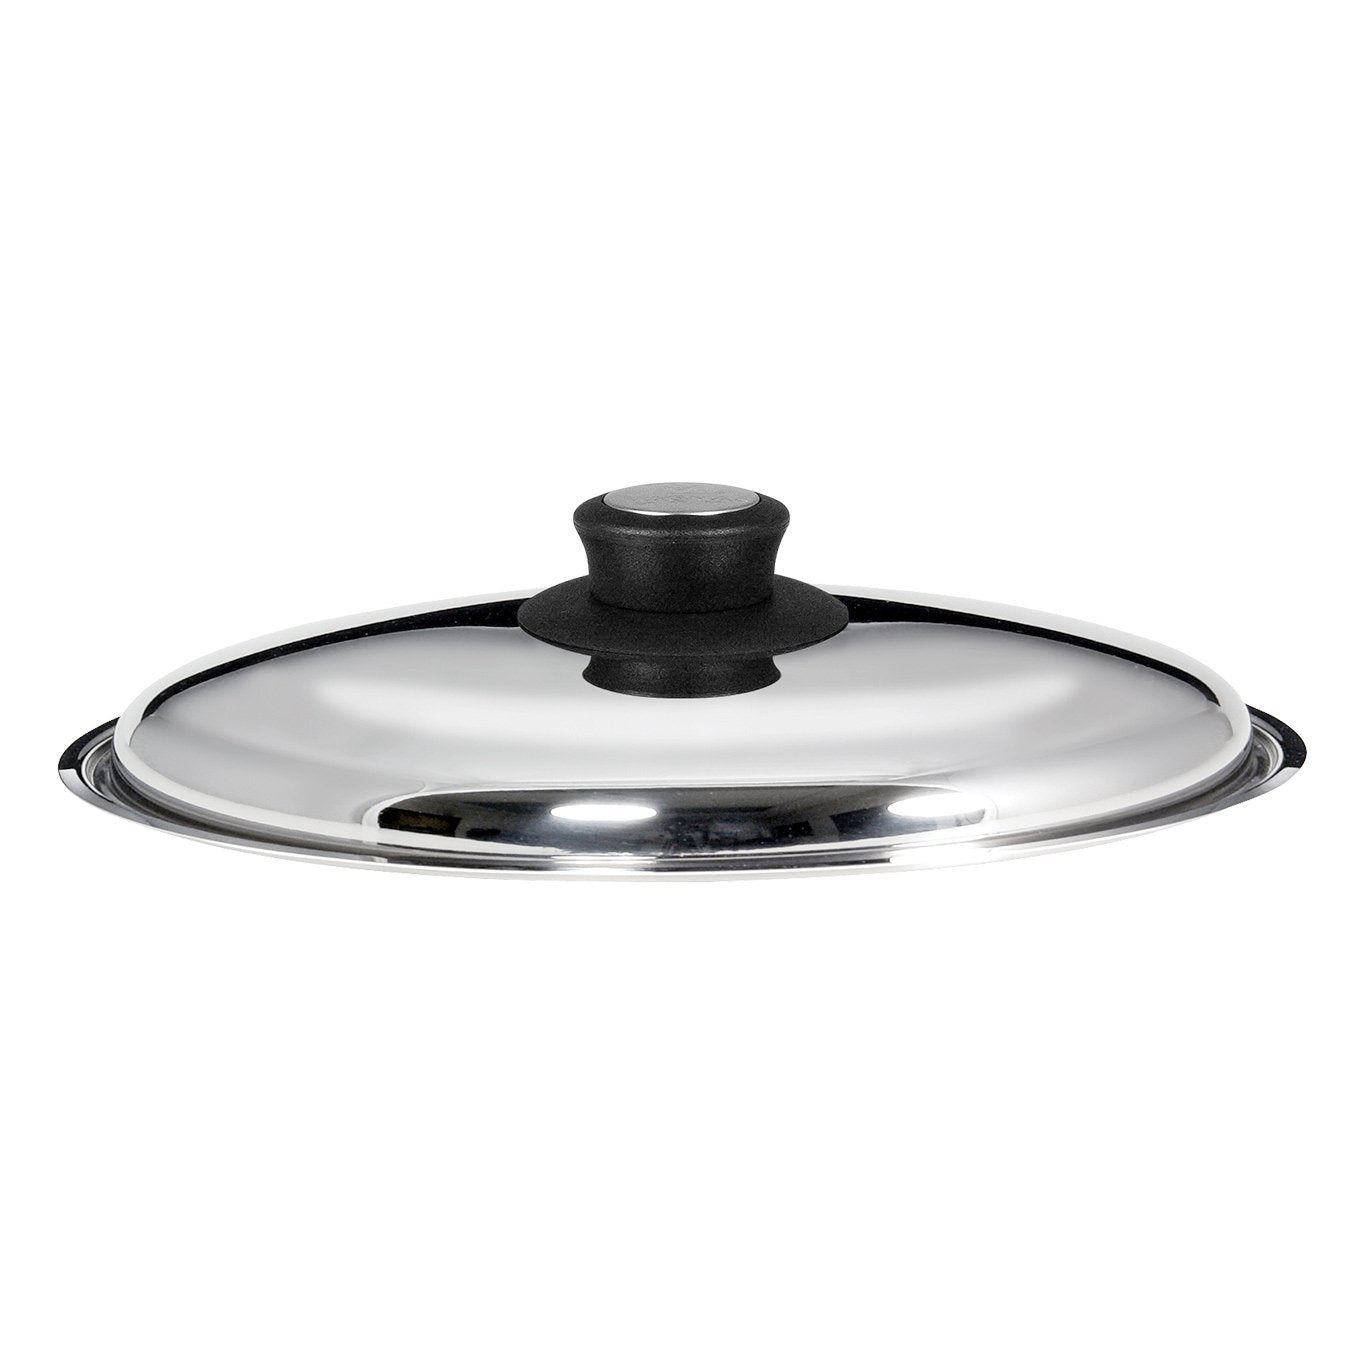 Magma 10-Piece Ceramica Gourmet “Nesting” Cookware Set (A10-366